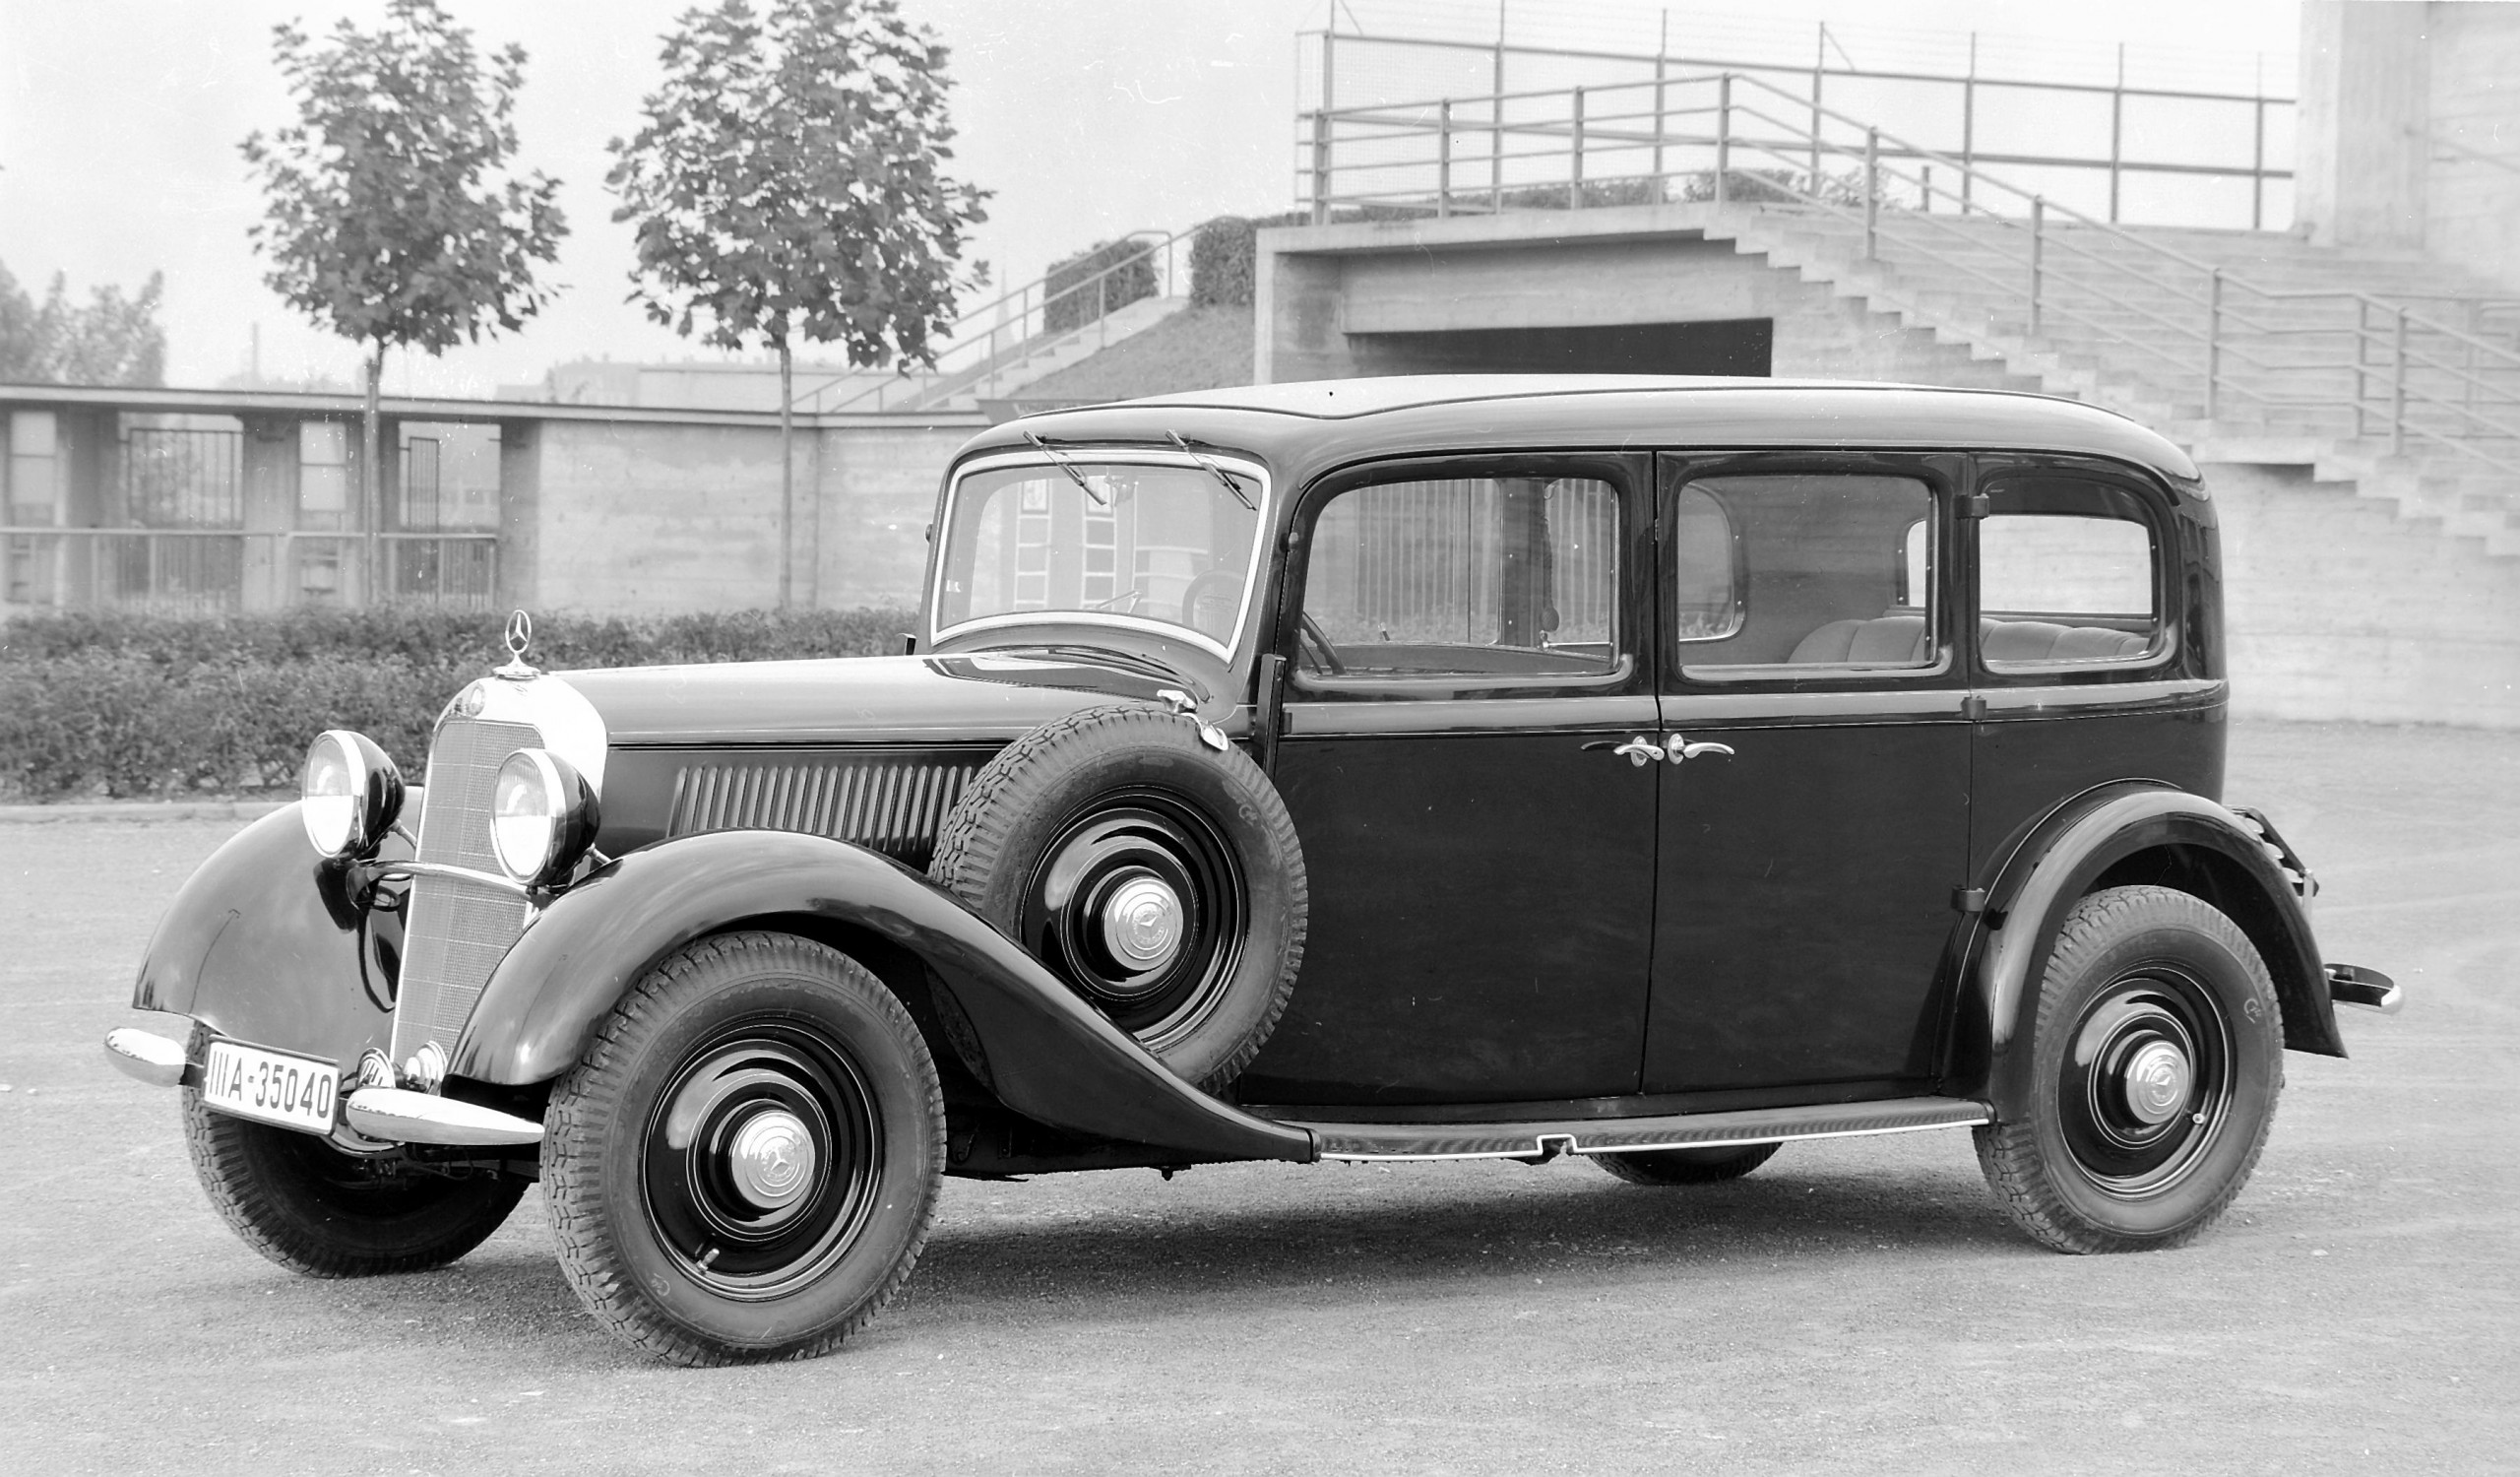 Pullman auch mit Dieselmotor: Mercedes-Benz 260 D Pullman-Limousine (Baureihe W 138) aus dem Jahr 1936. 

Pullman also with diesel engine: Mercedes-Benz 260 D Pullman limousine (W 138 series) from 1936.